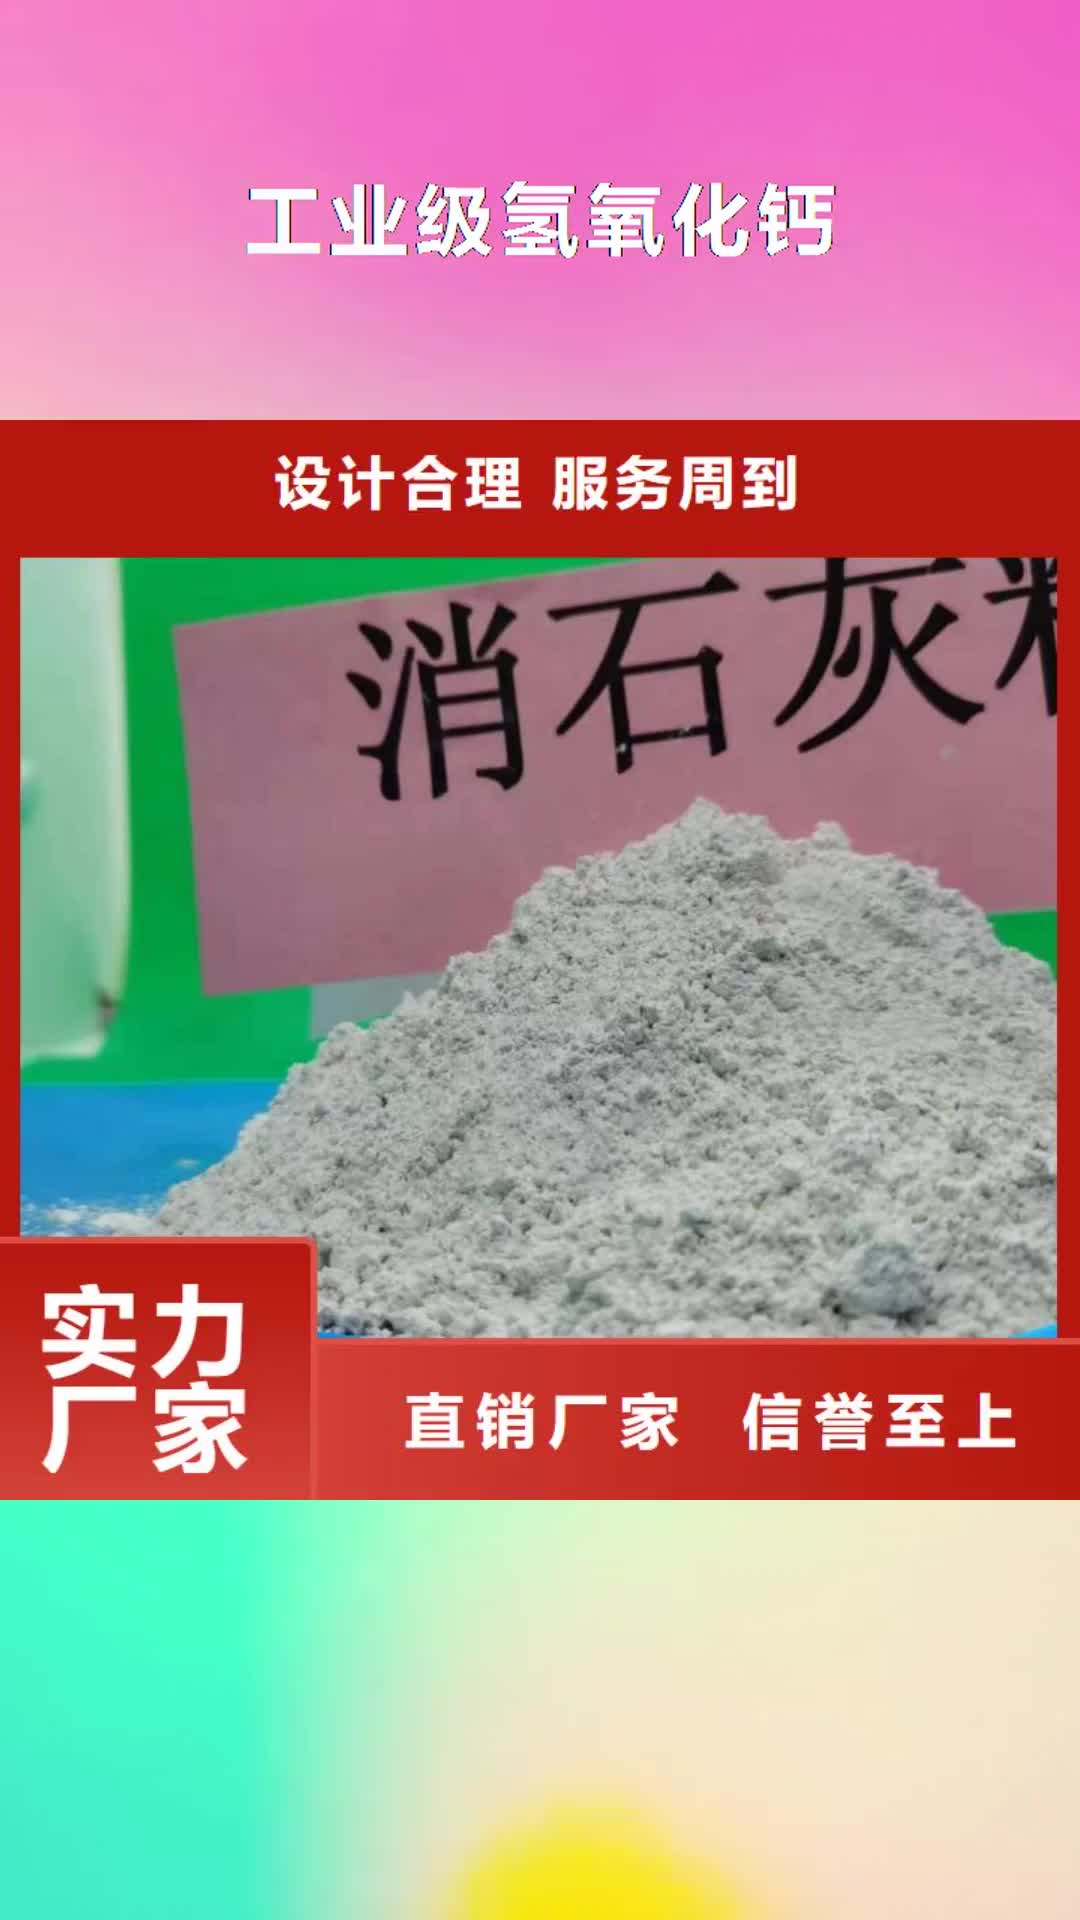 郴州【工业级氢氧化钙】高效脱硫剂符合行业标准